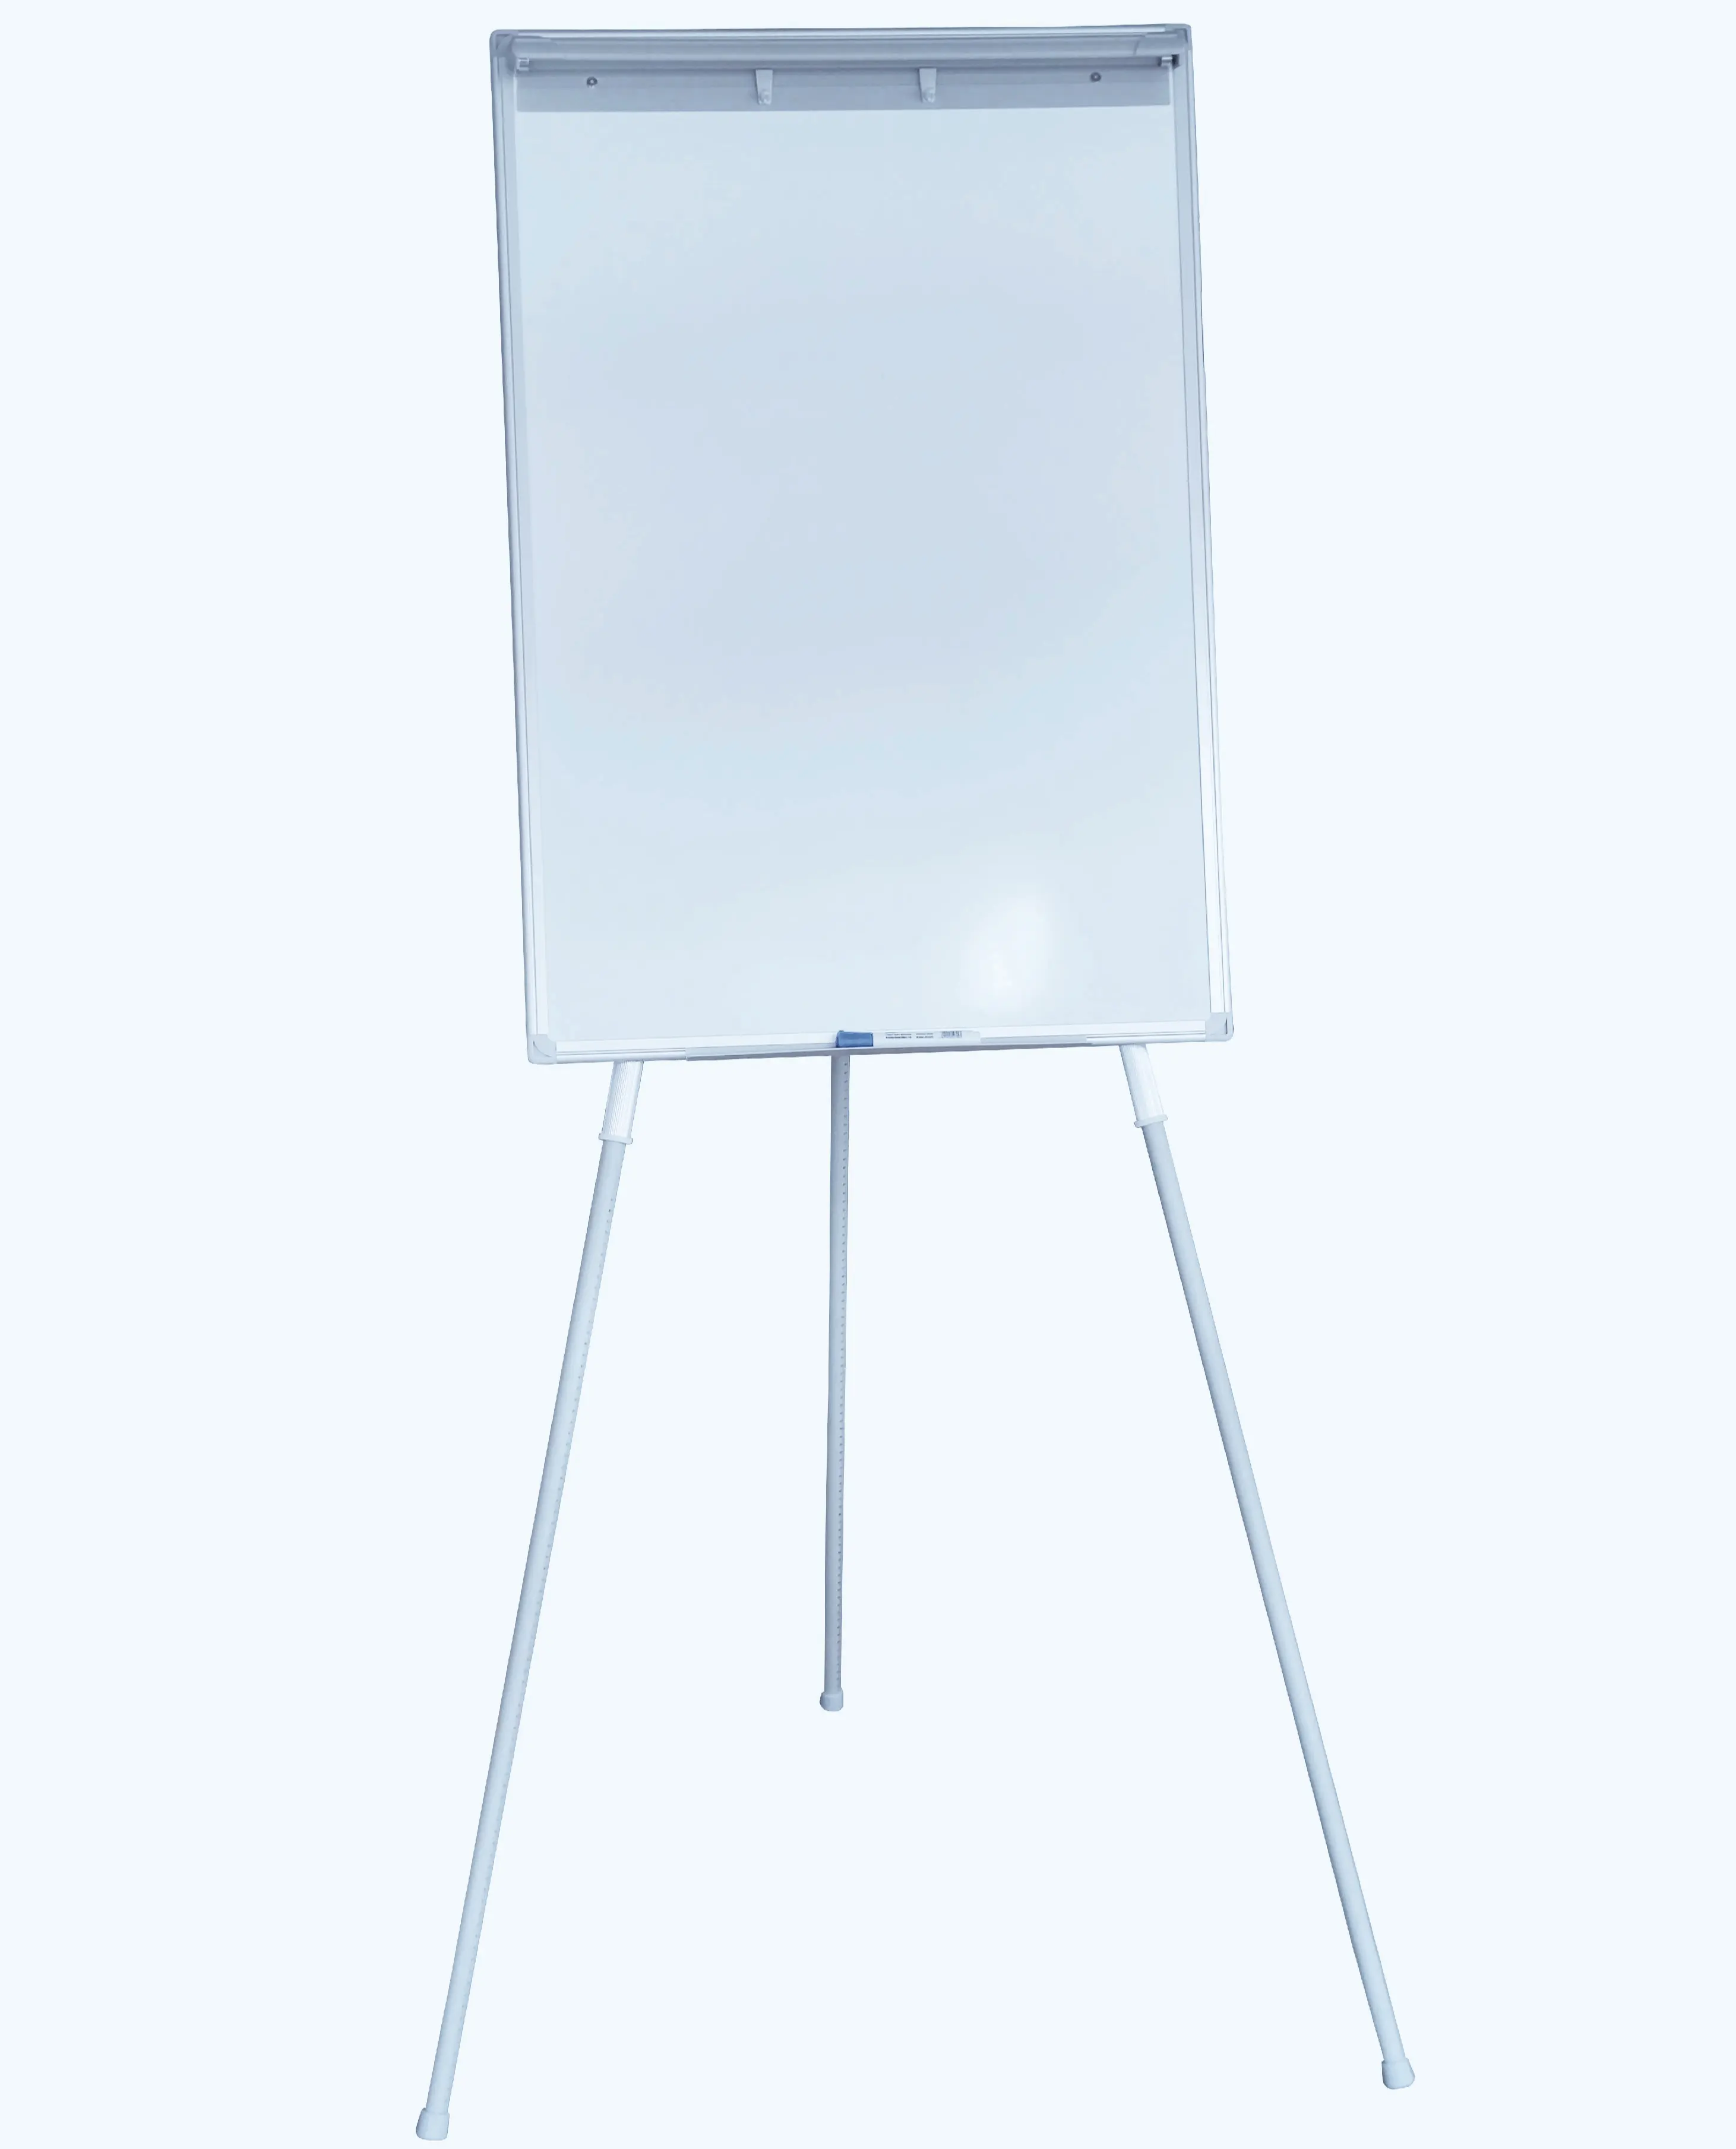 Tableau à bascule réglable en hauteur/chevalet de tableau blanc magnétique pour l'écriture et l'affichage au bureau ou à la maison